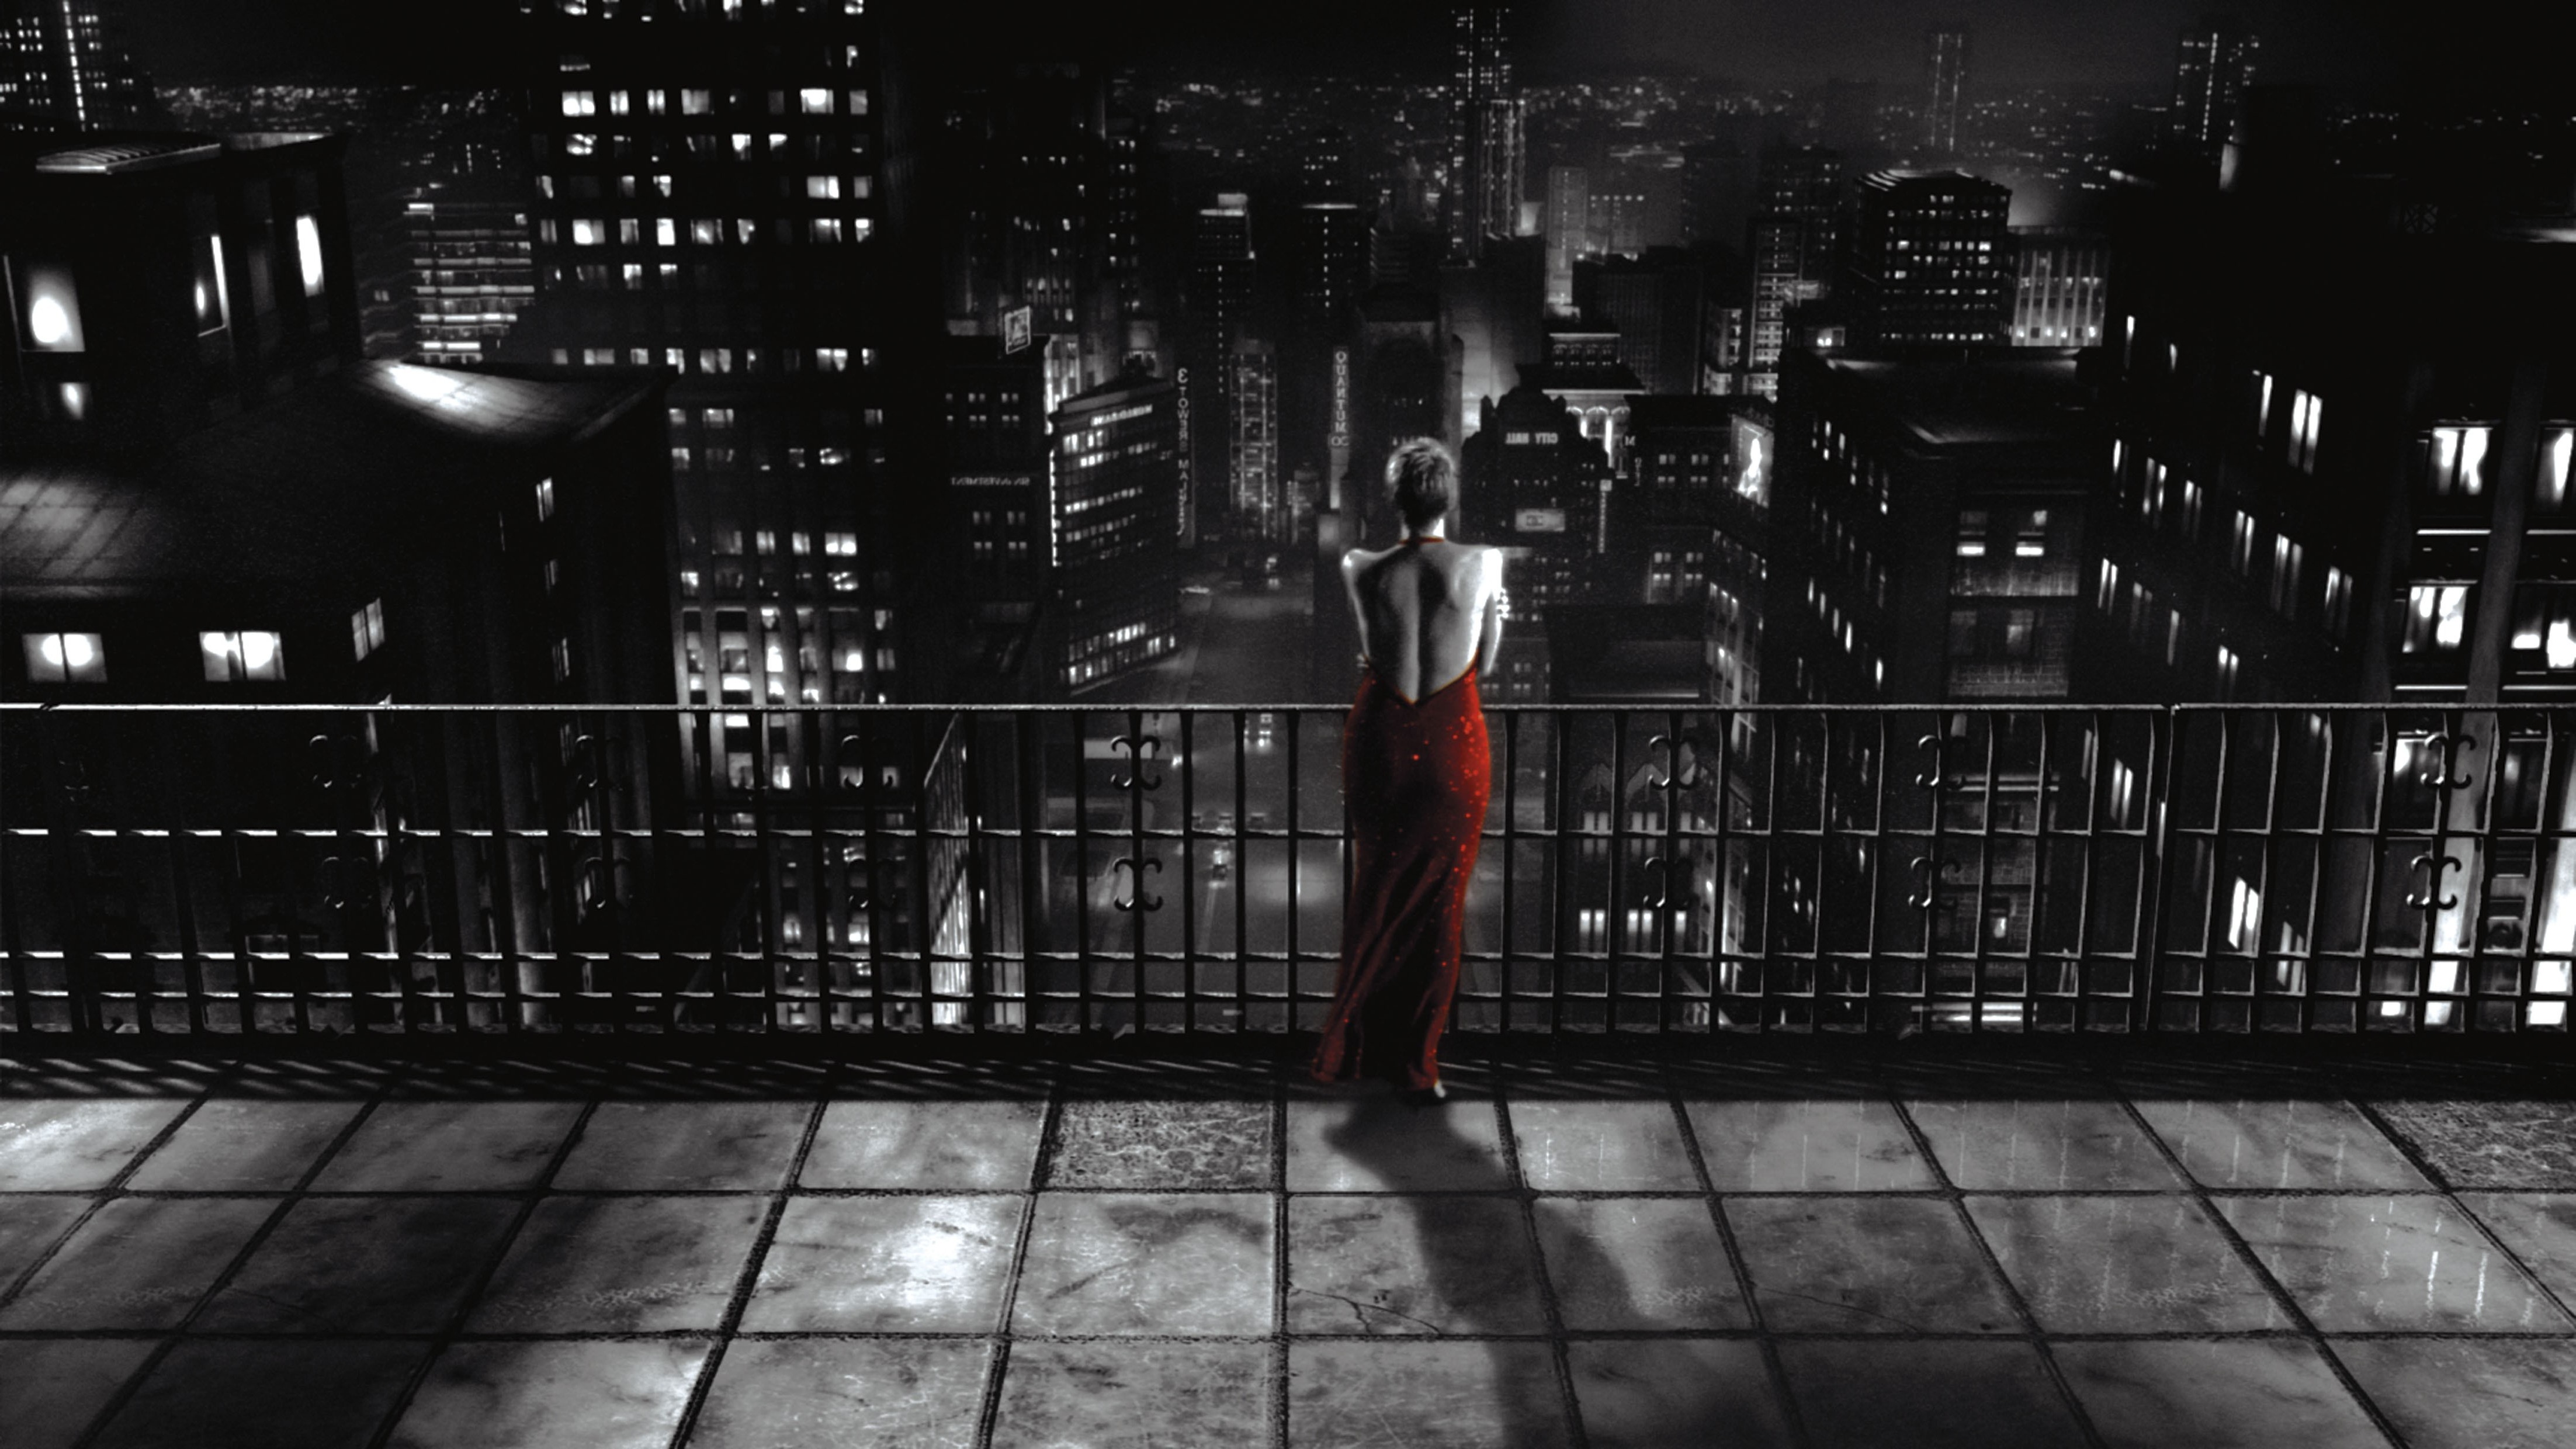 죄 도시 벽지,배트맨,어둠,시티,검정색과 흰색,소설 속의 인물